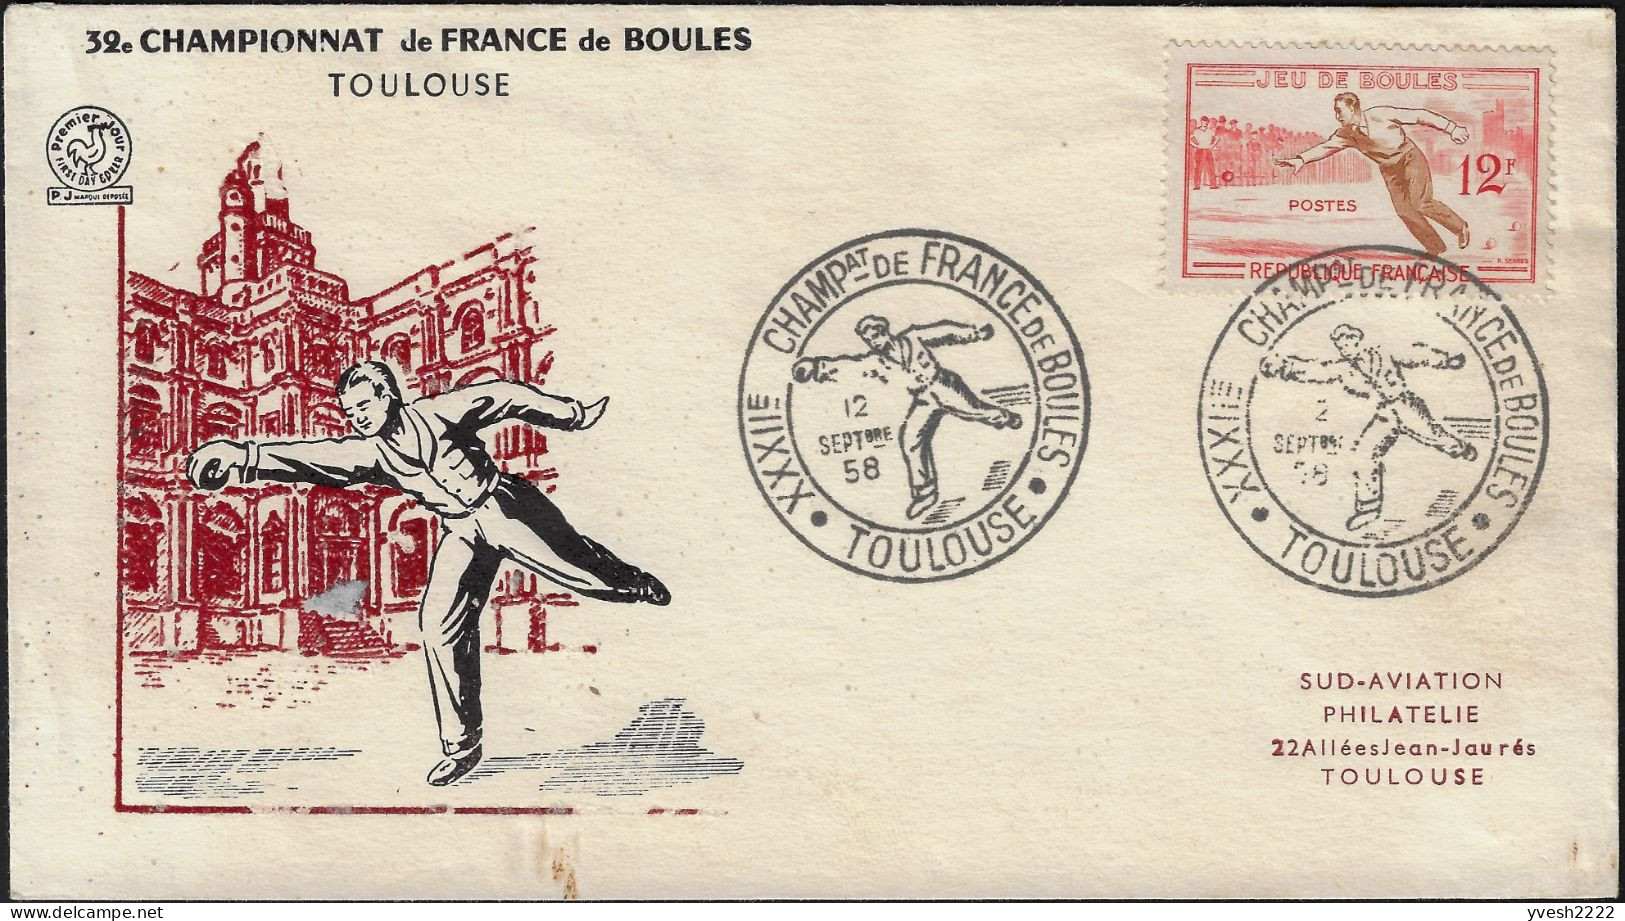 France 1958 Y&T 1161. Enveloppe, Jeu De Boules. Championnat De France, Toulouse - Petanque